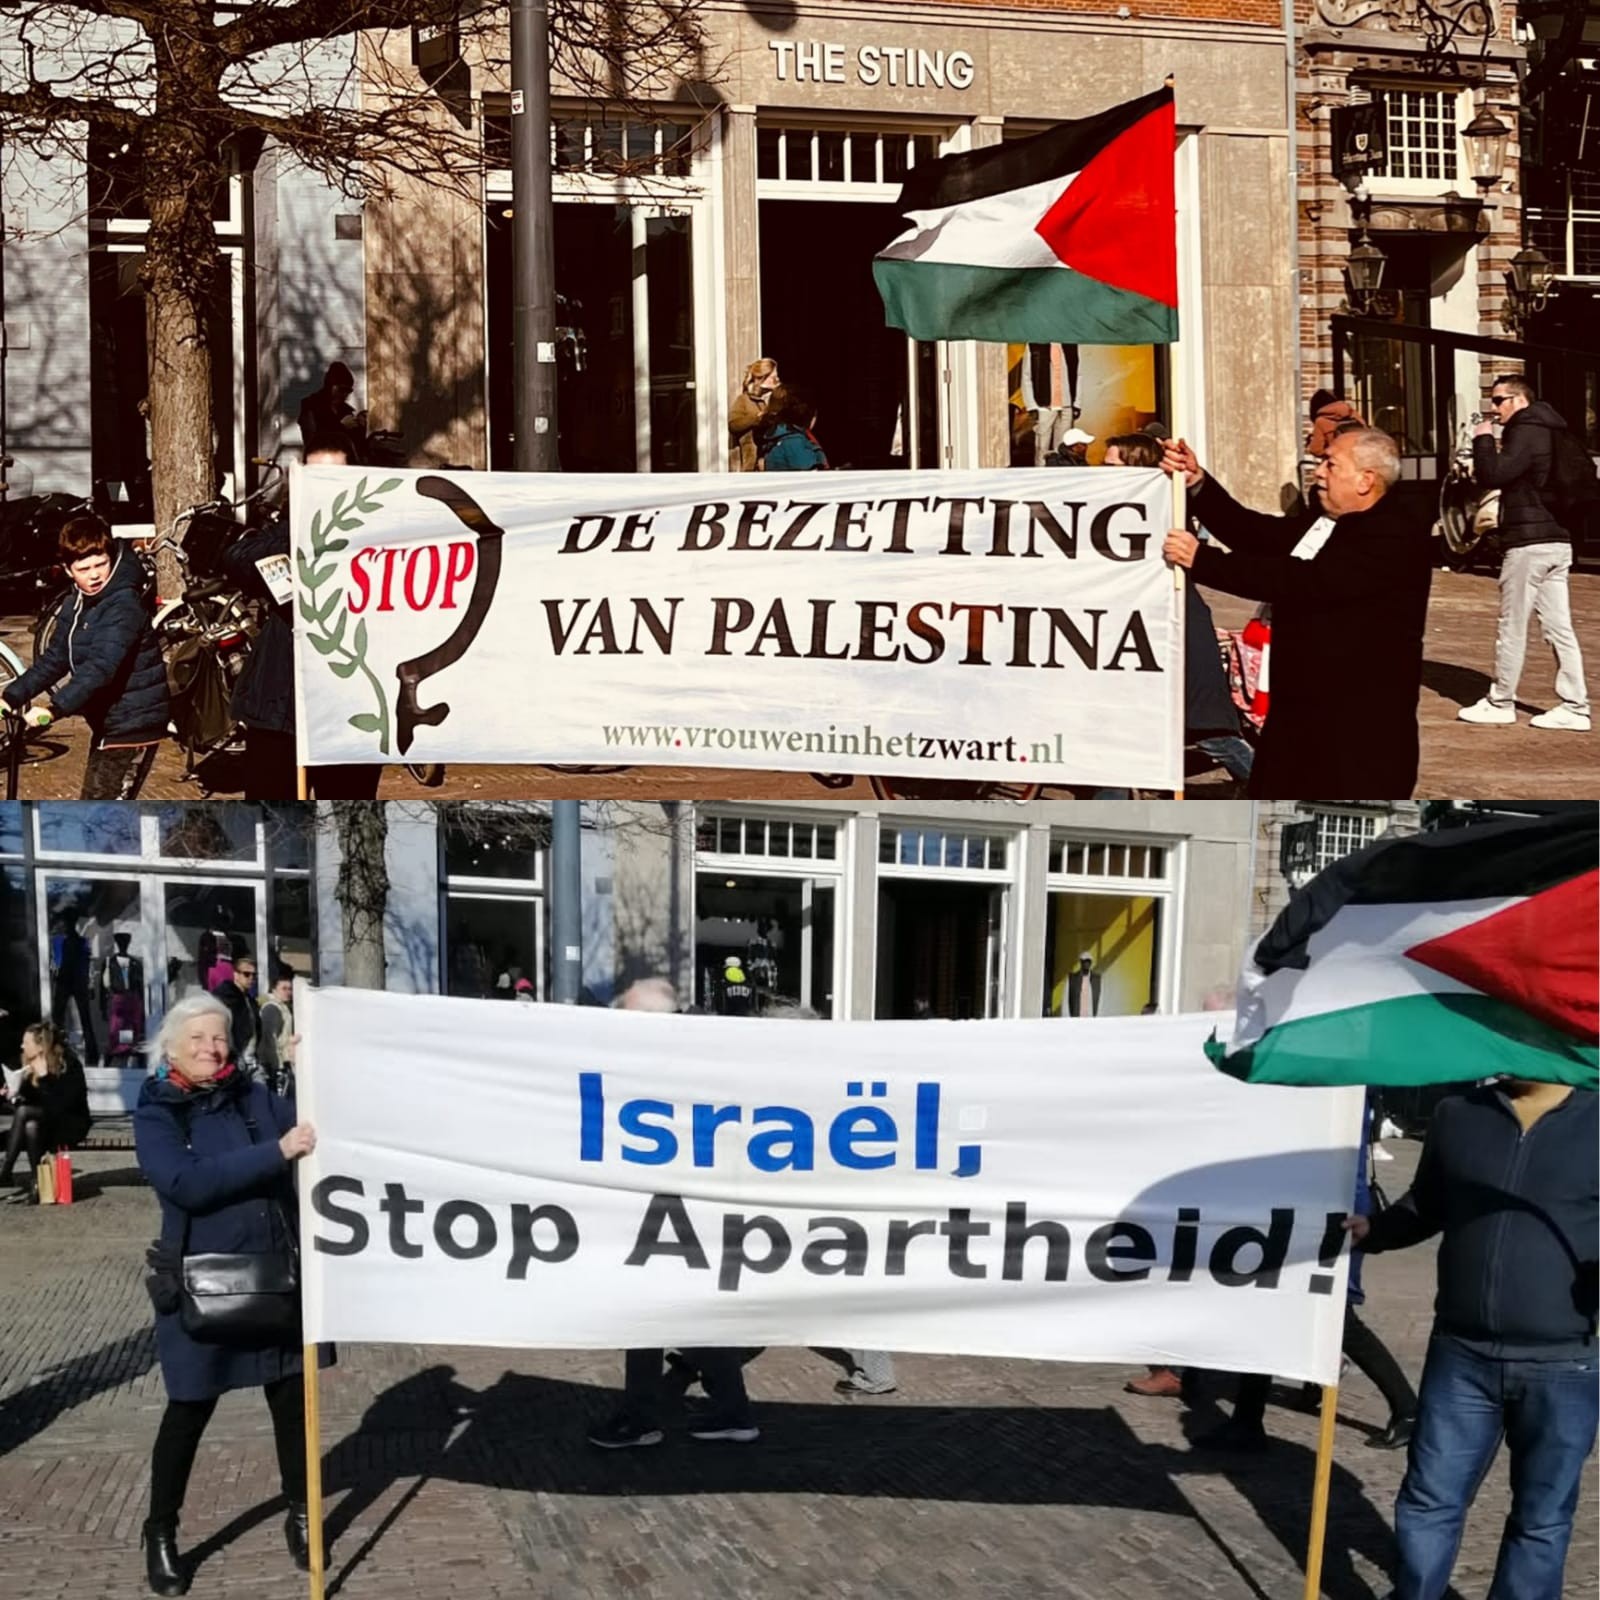 وقفة تضامنية مع الشعب الفلسطيني في مدينة (هارلم) في هولندا 1.jpeg